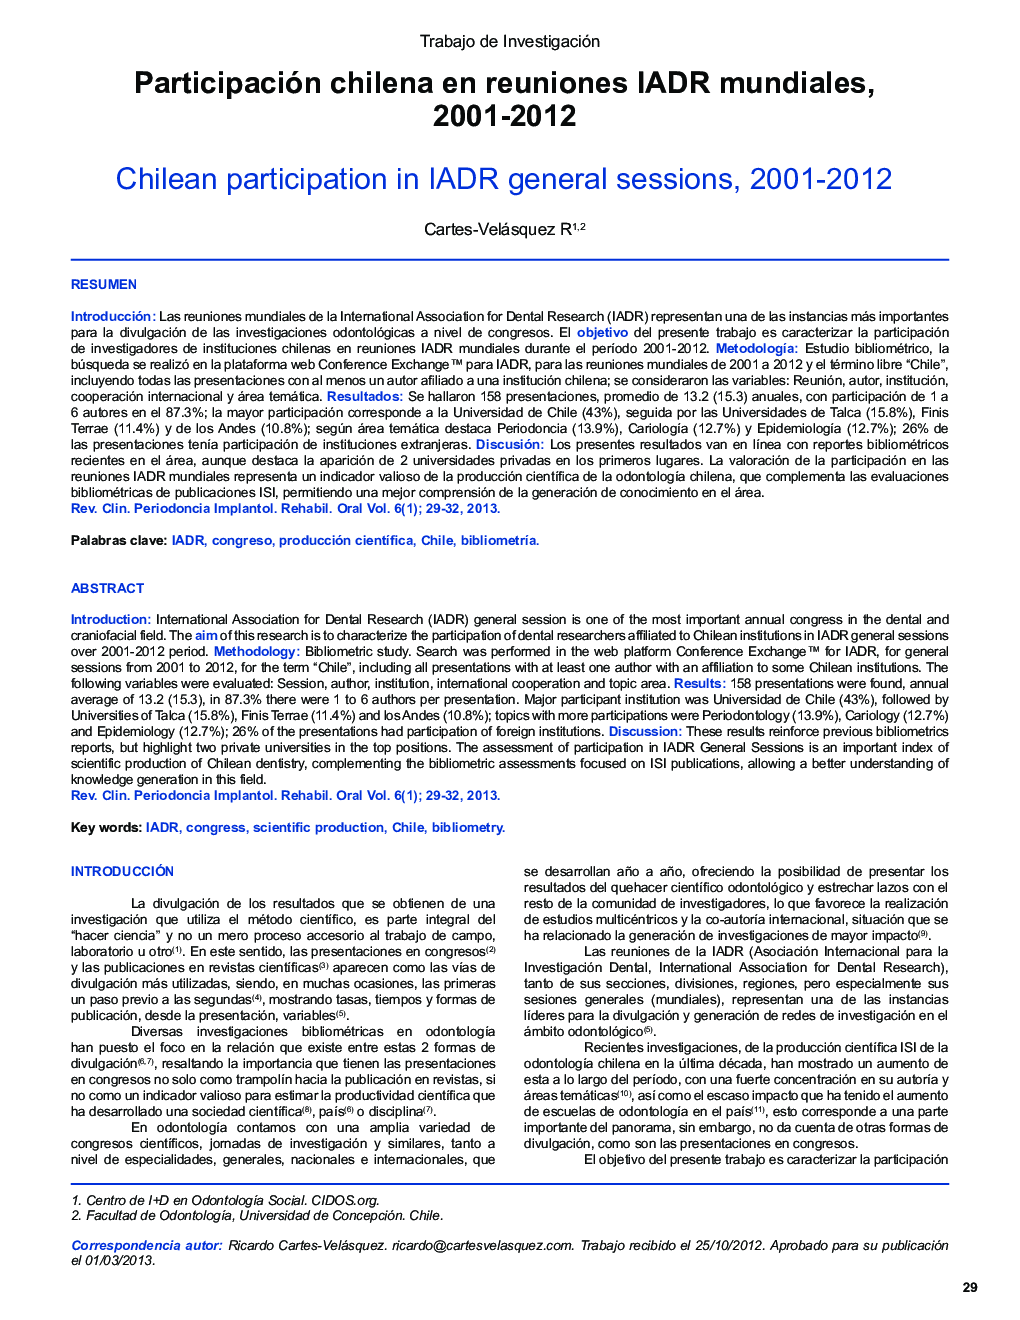 Participación chilena en reuniones IADR mundiales, 2001-2012